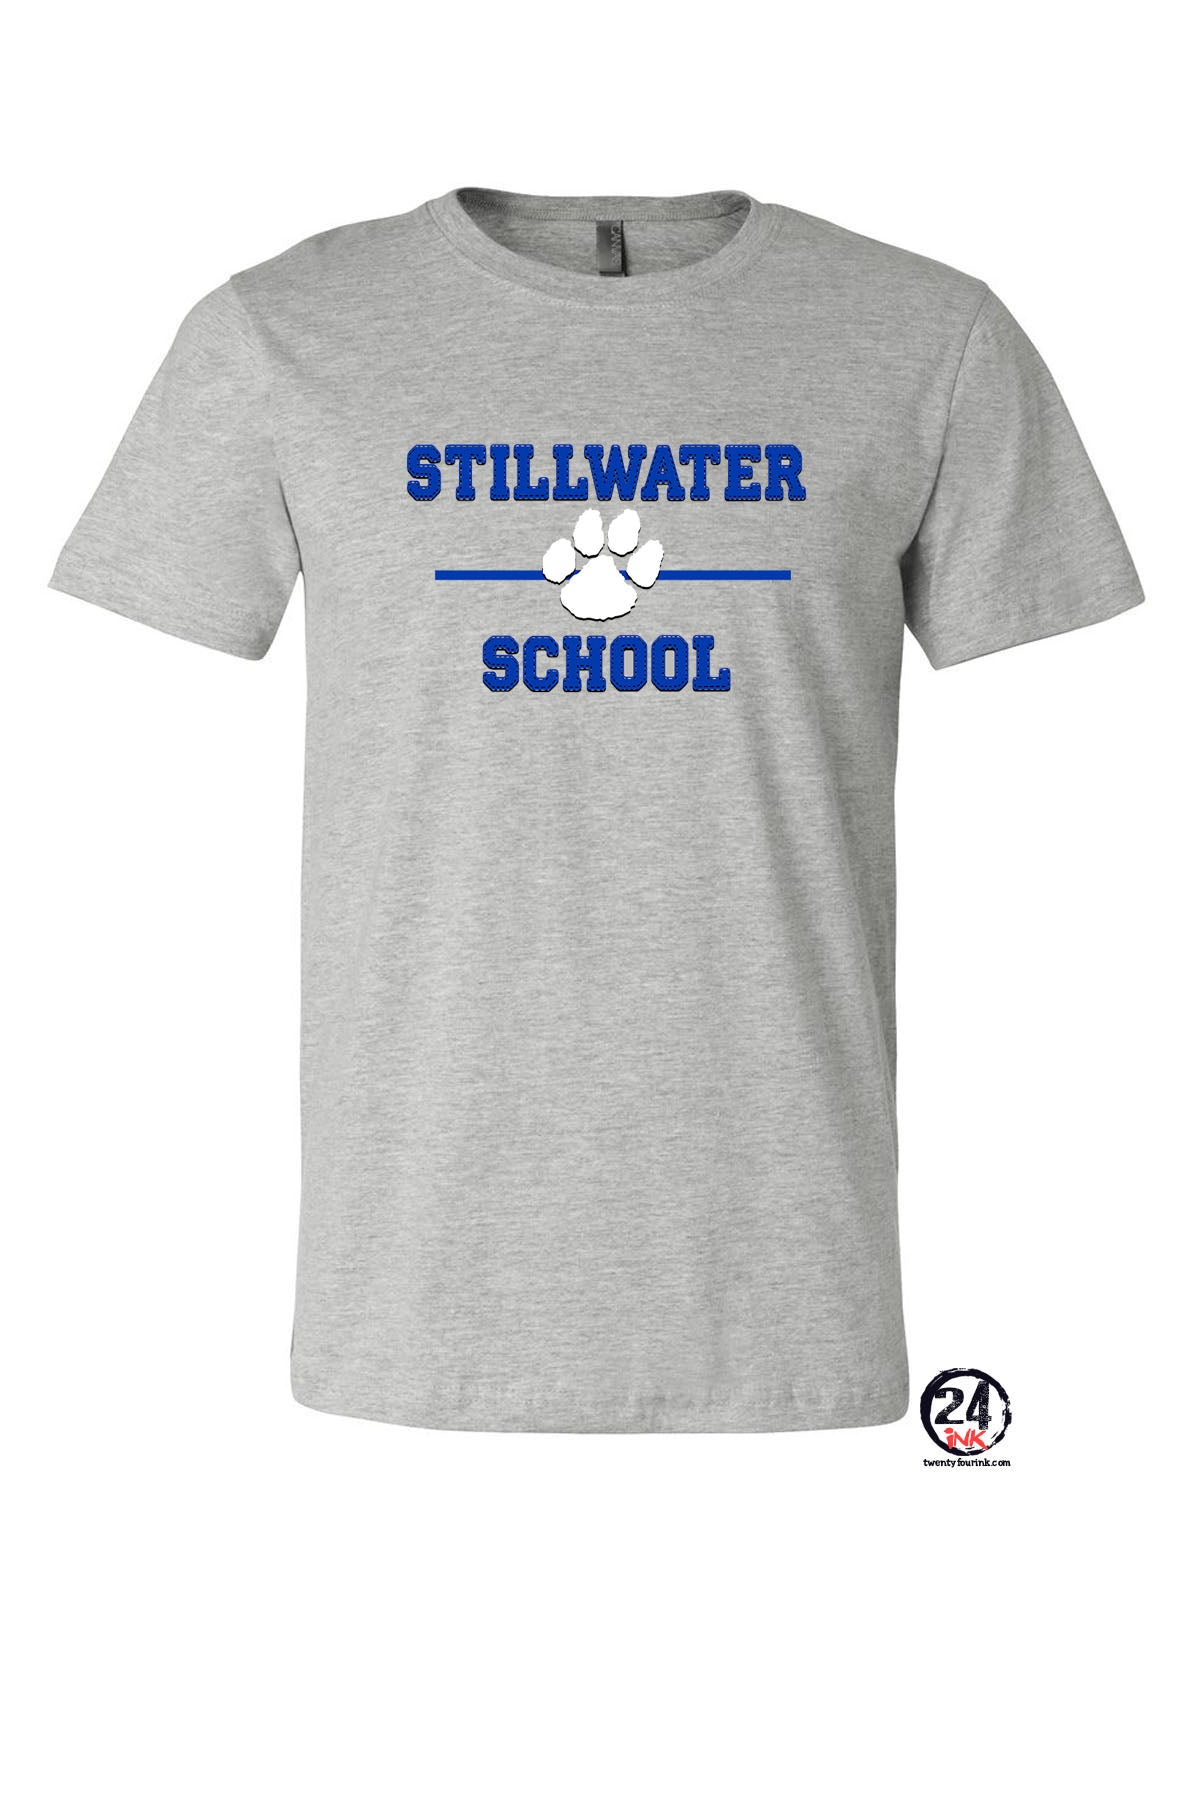 Stillwater Design 11 T-Shirt